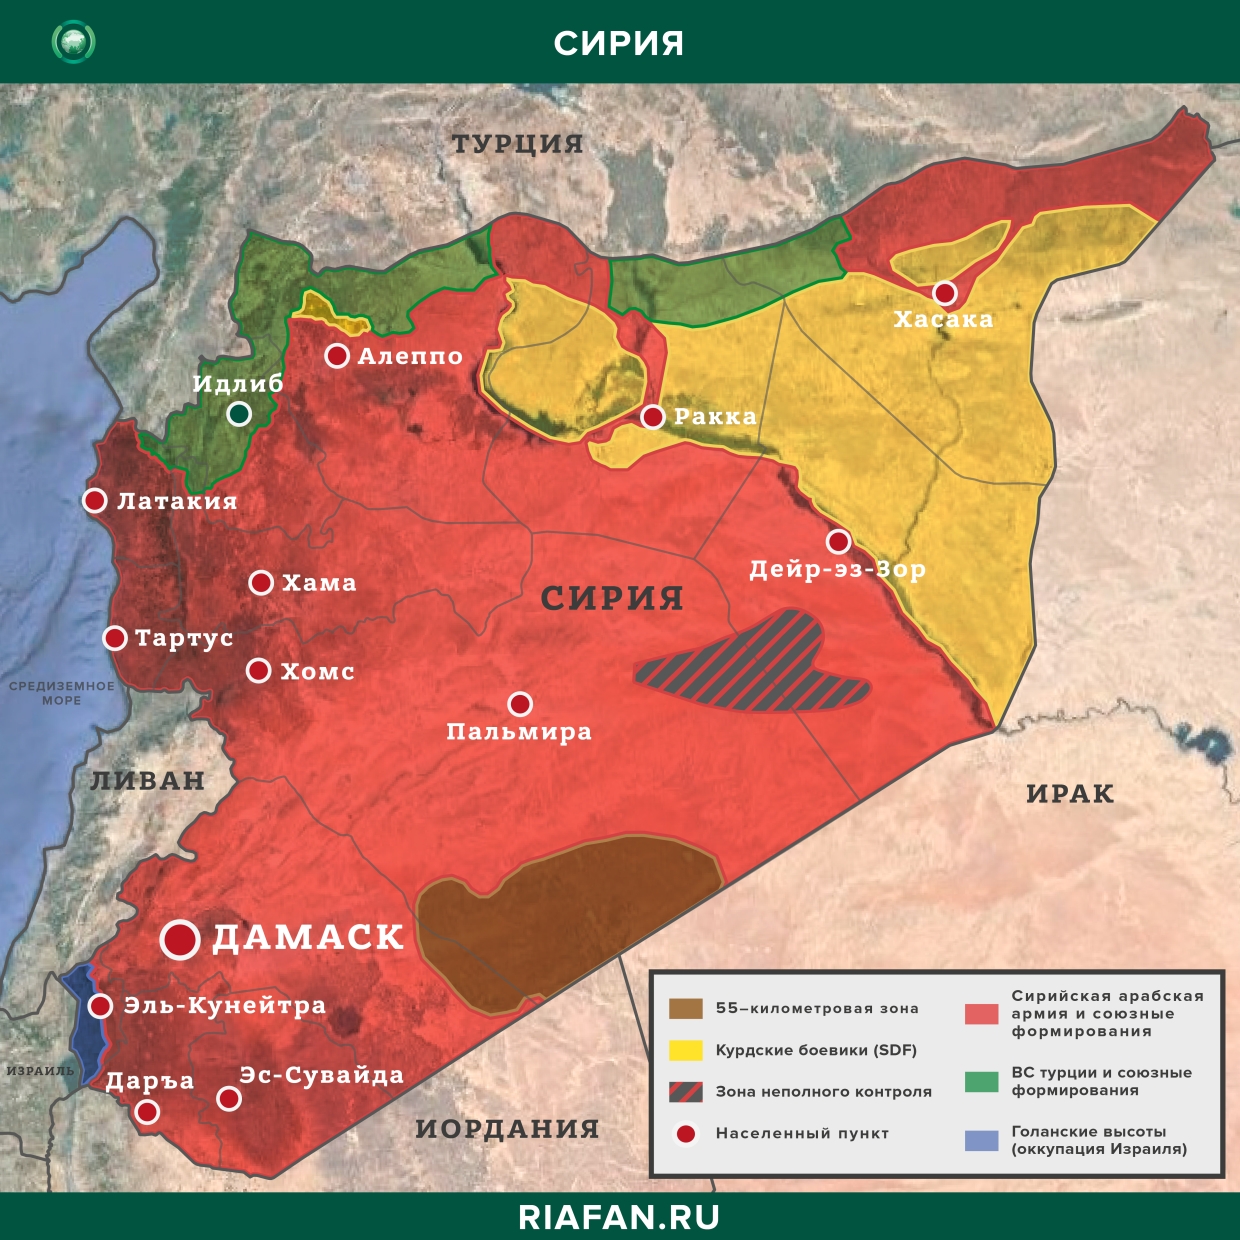 叙利亚每日结果 2 八月 06.00: 伊斯兰国袭击代尔祖尔, 伊德利卜的叙利亚空军情报